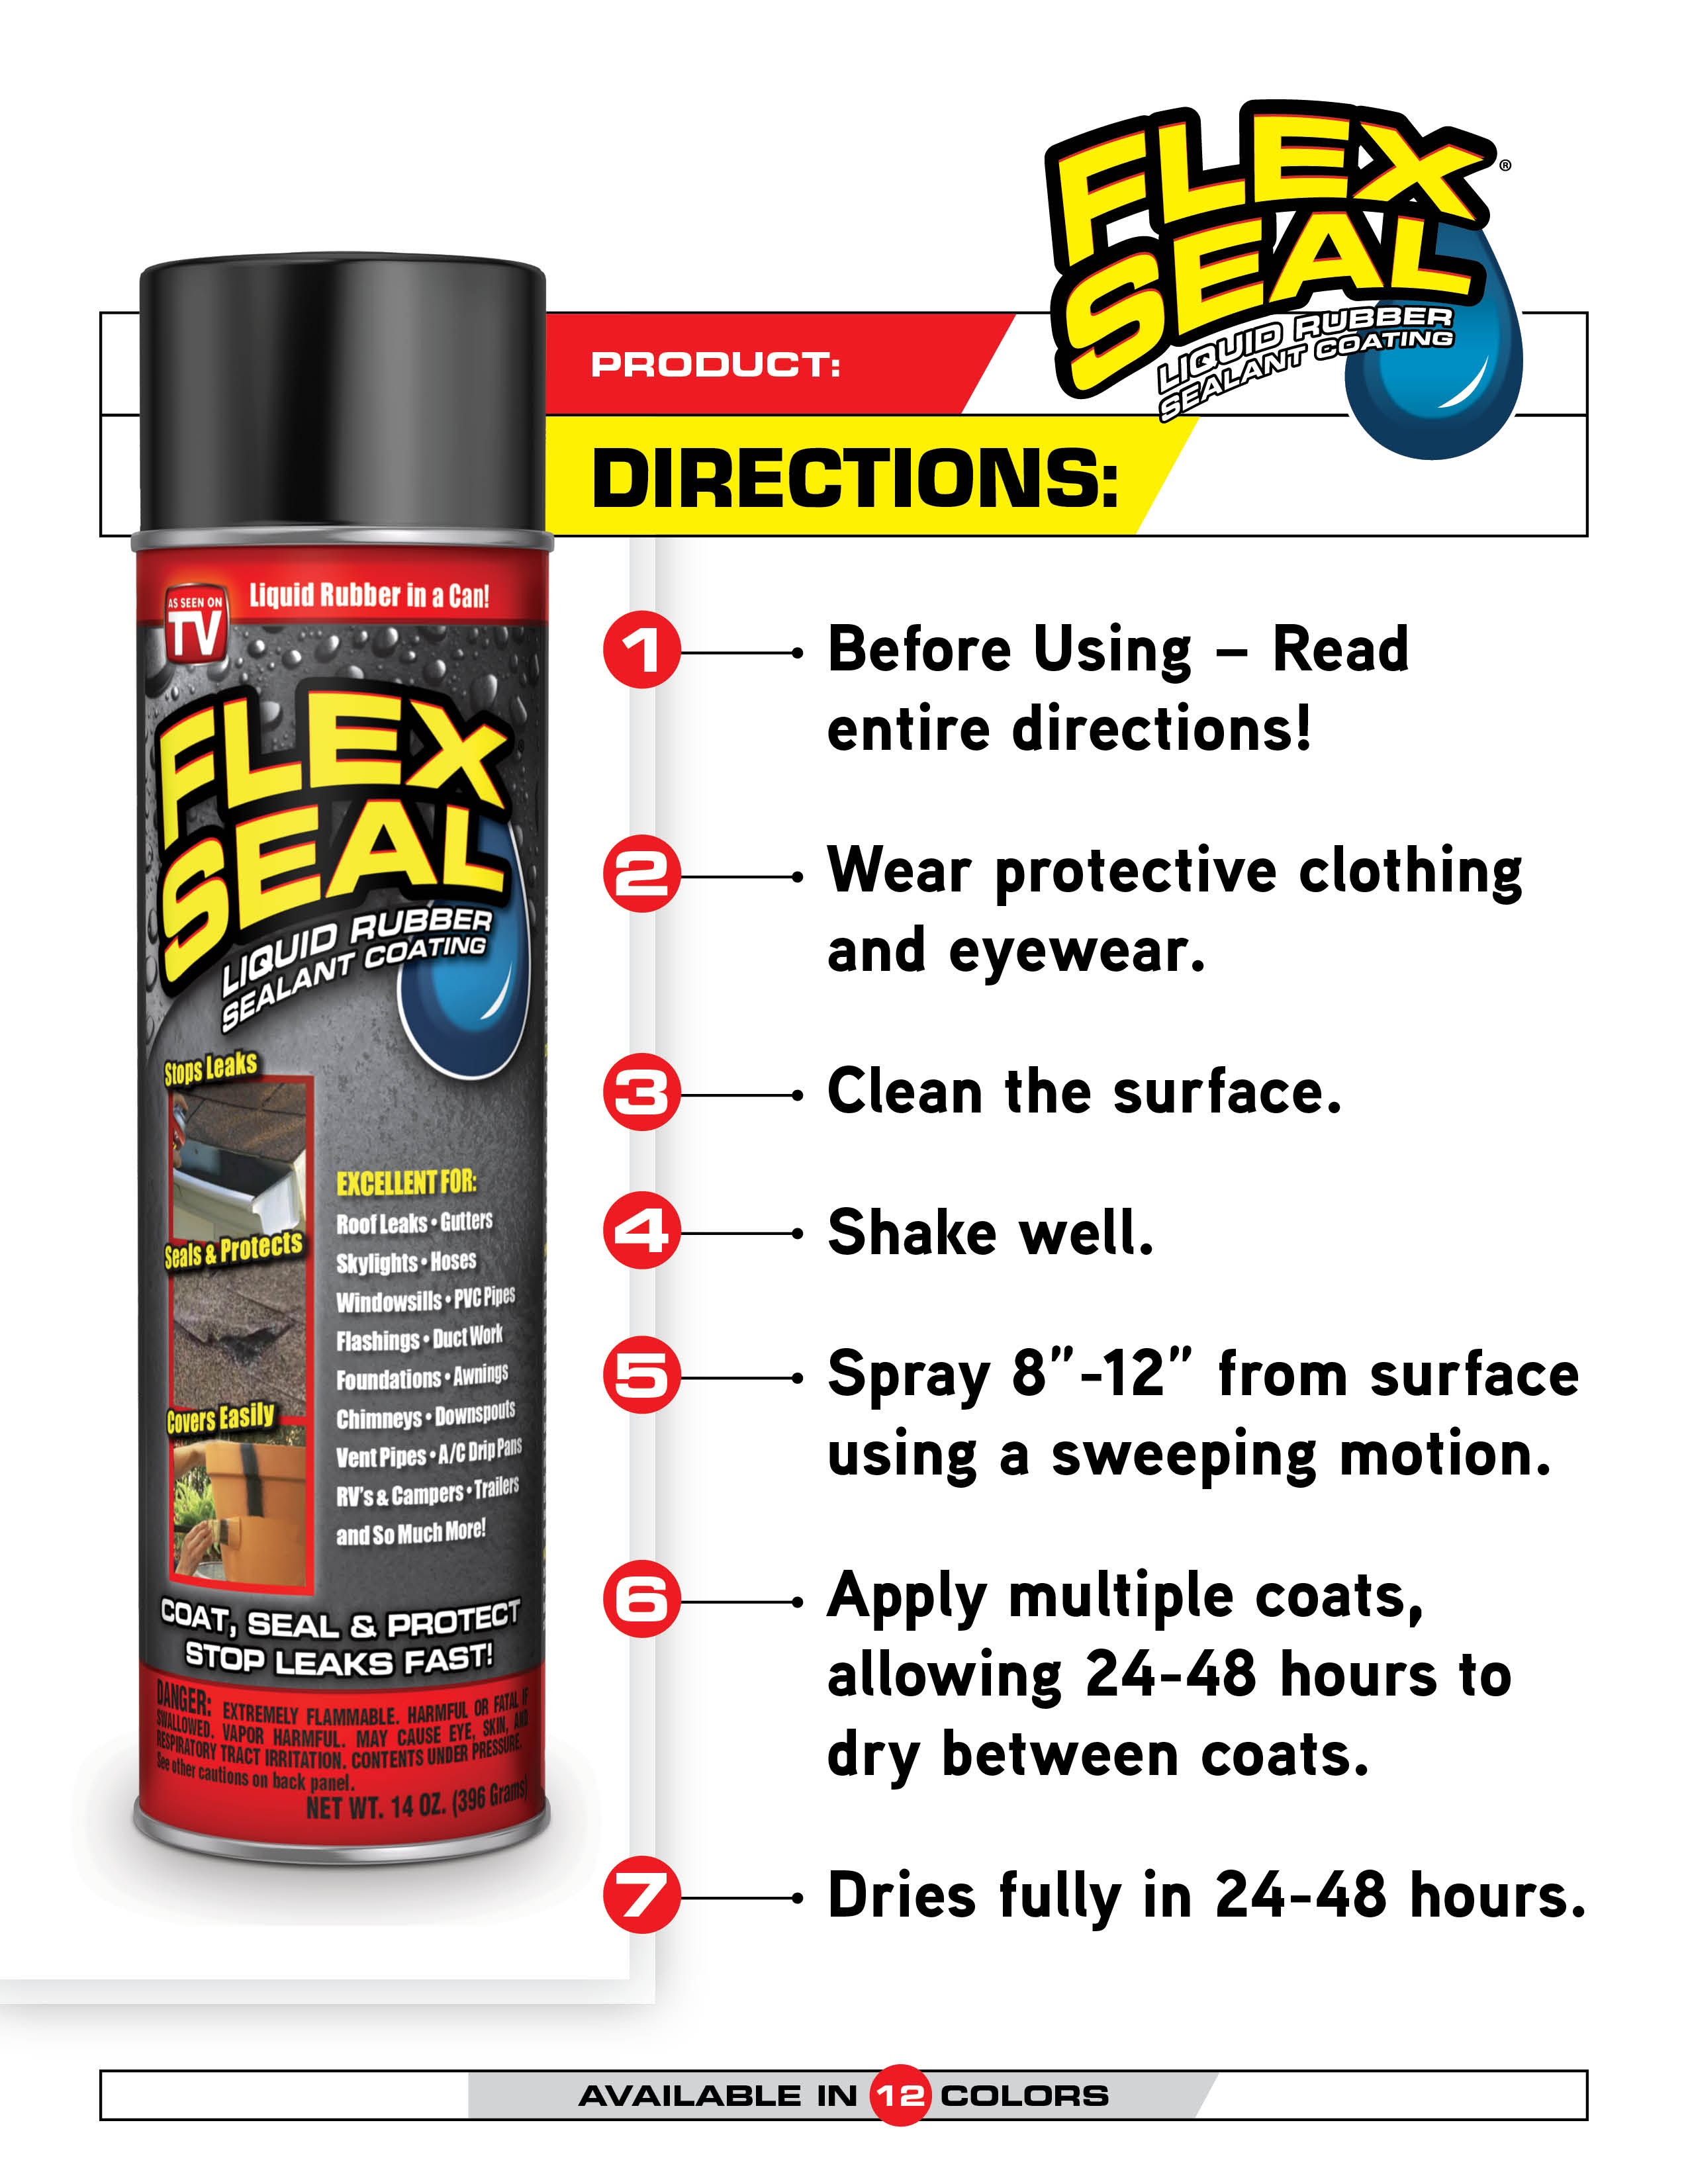 Flex Seal Aerosol Liquid Rubber Sealant Coating, 14 oz, Black